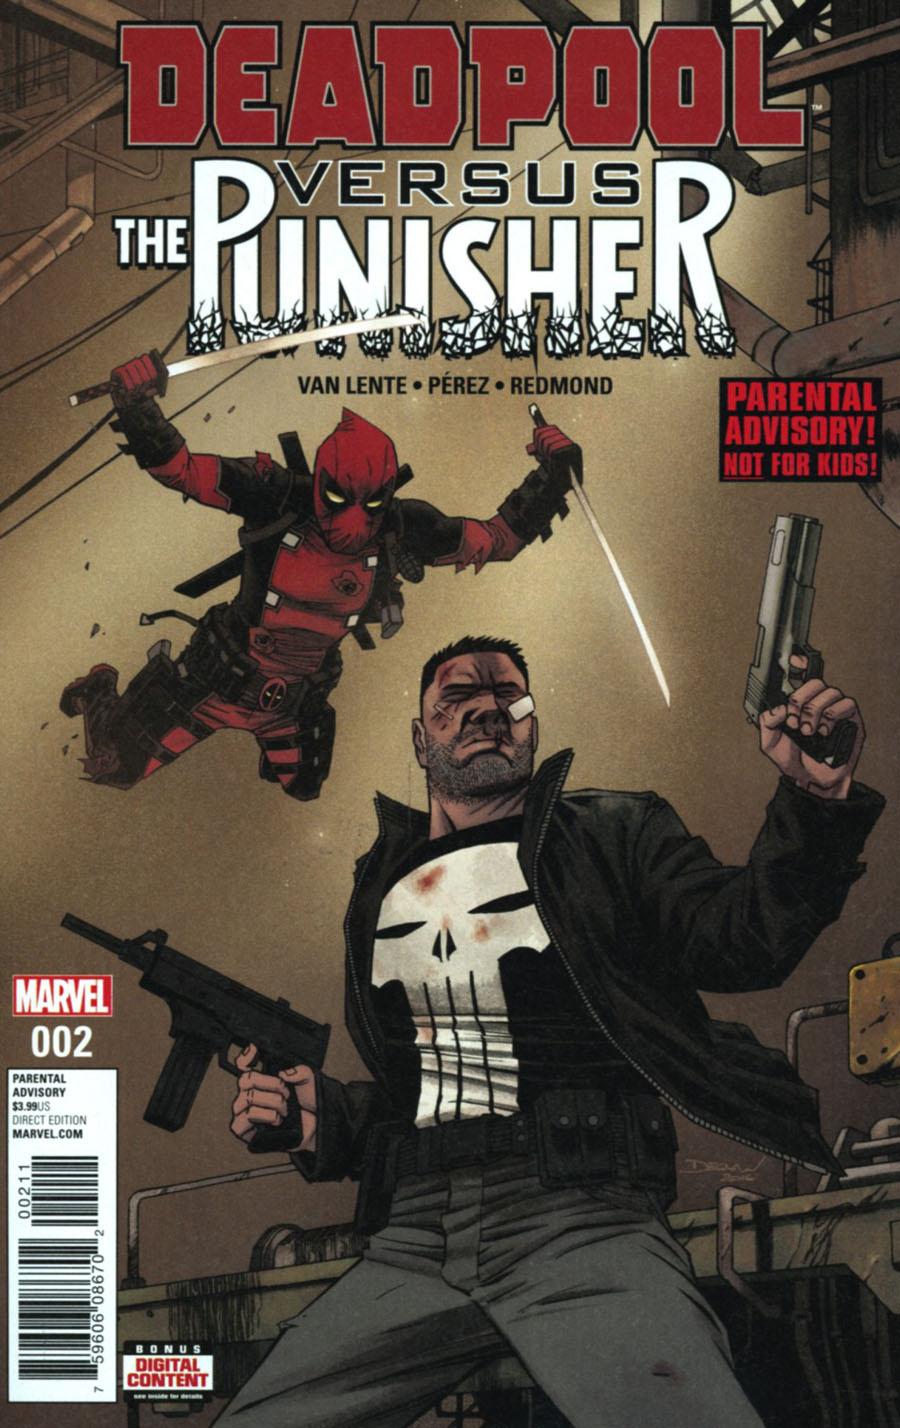 Deadpool vs Punisher Vol. 1 #2